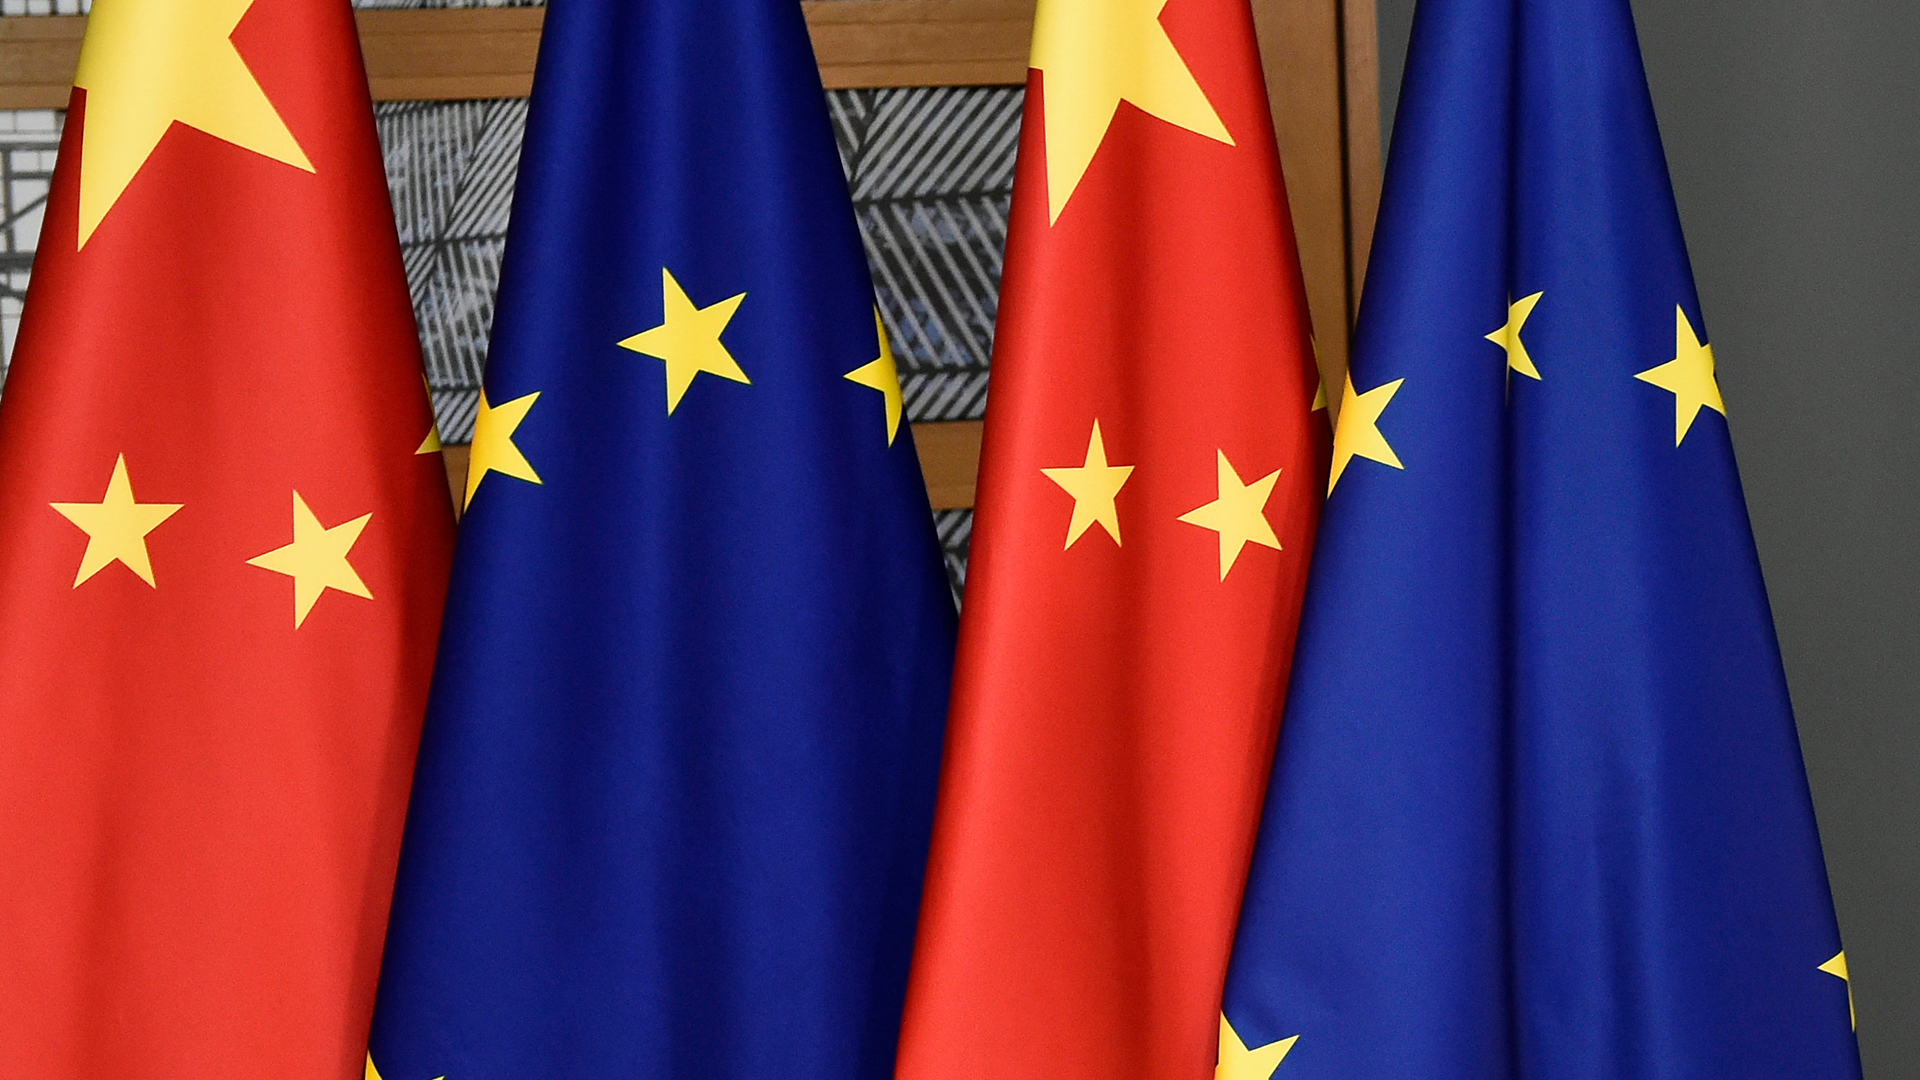 Flaggen von China und Europa stehen nebeneinander. | AP